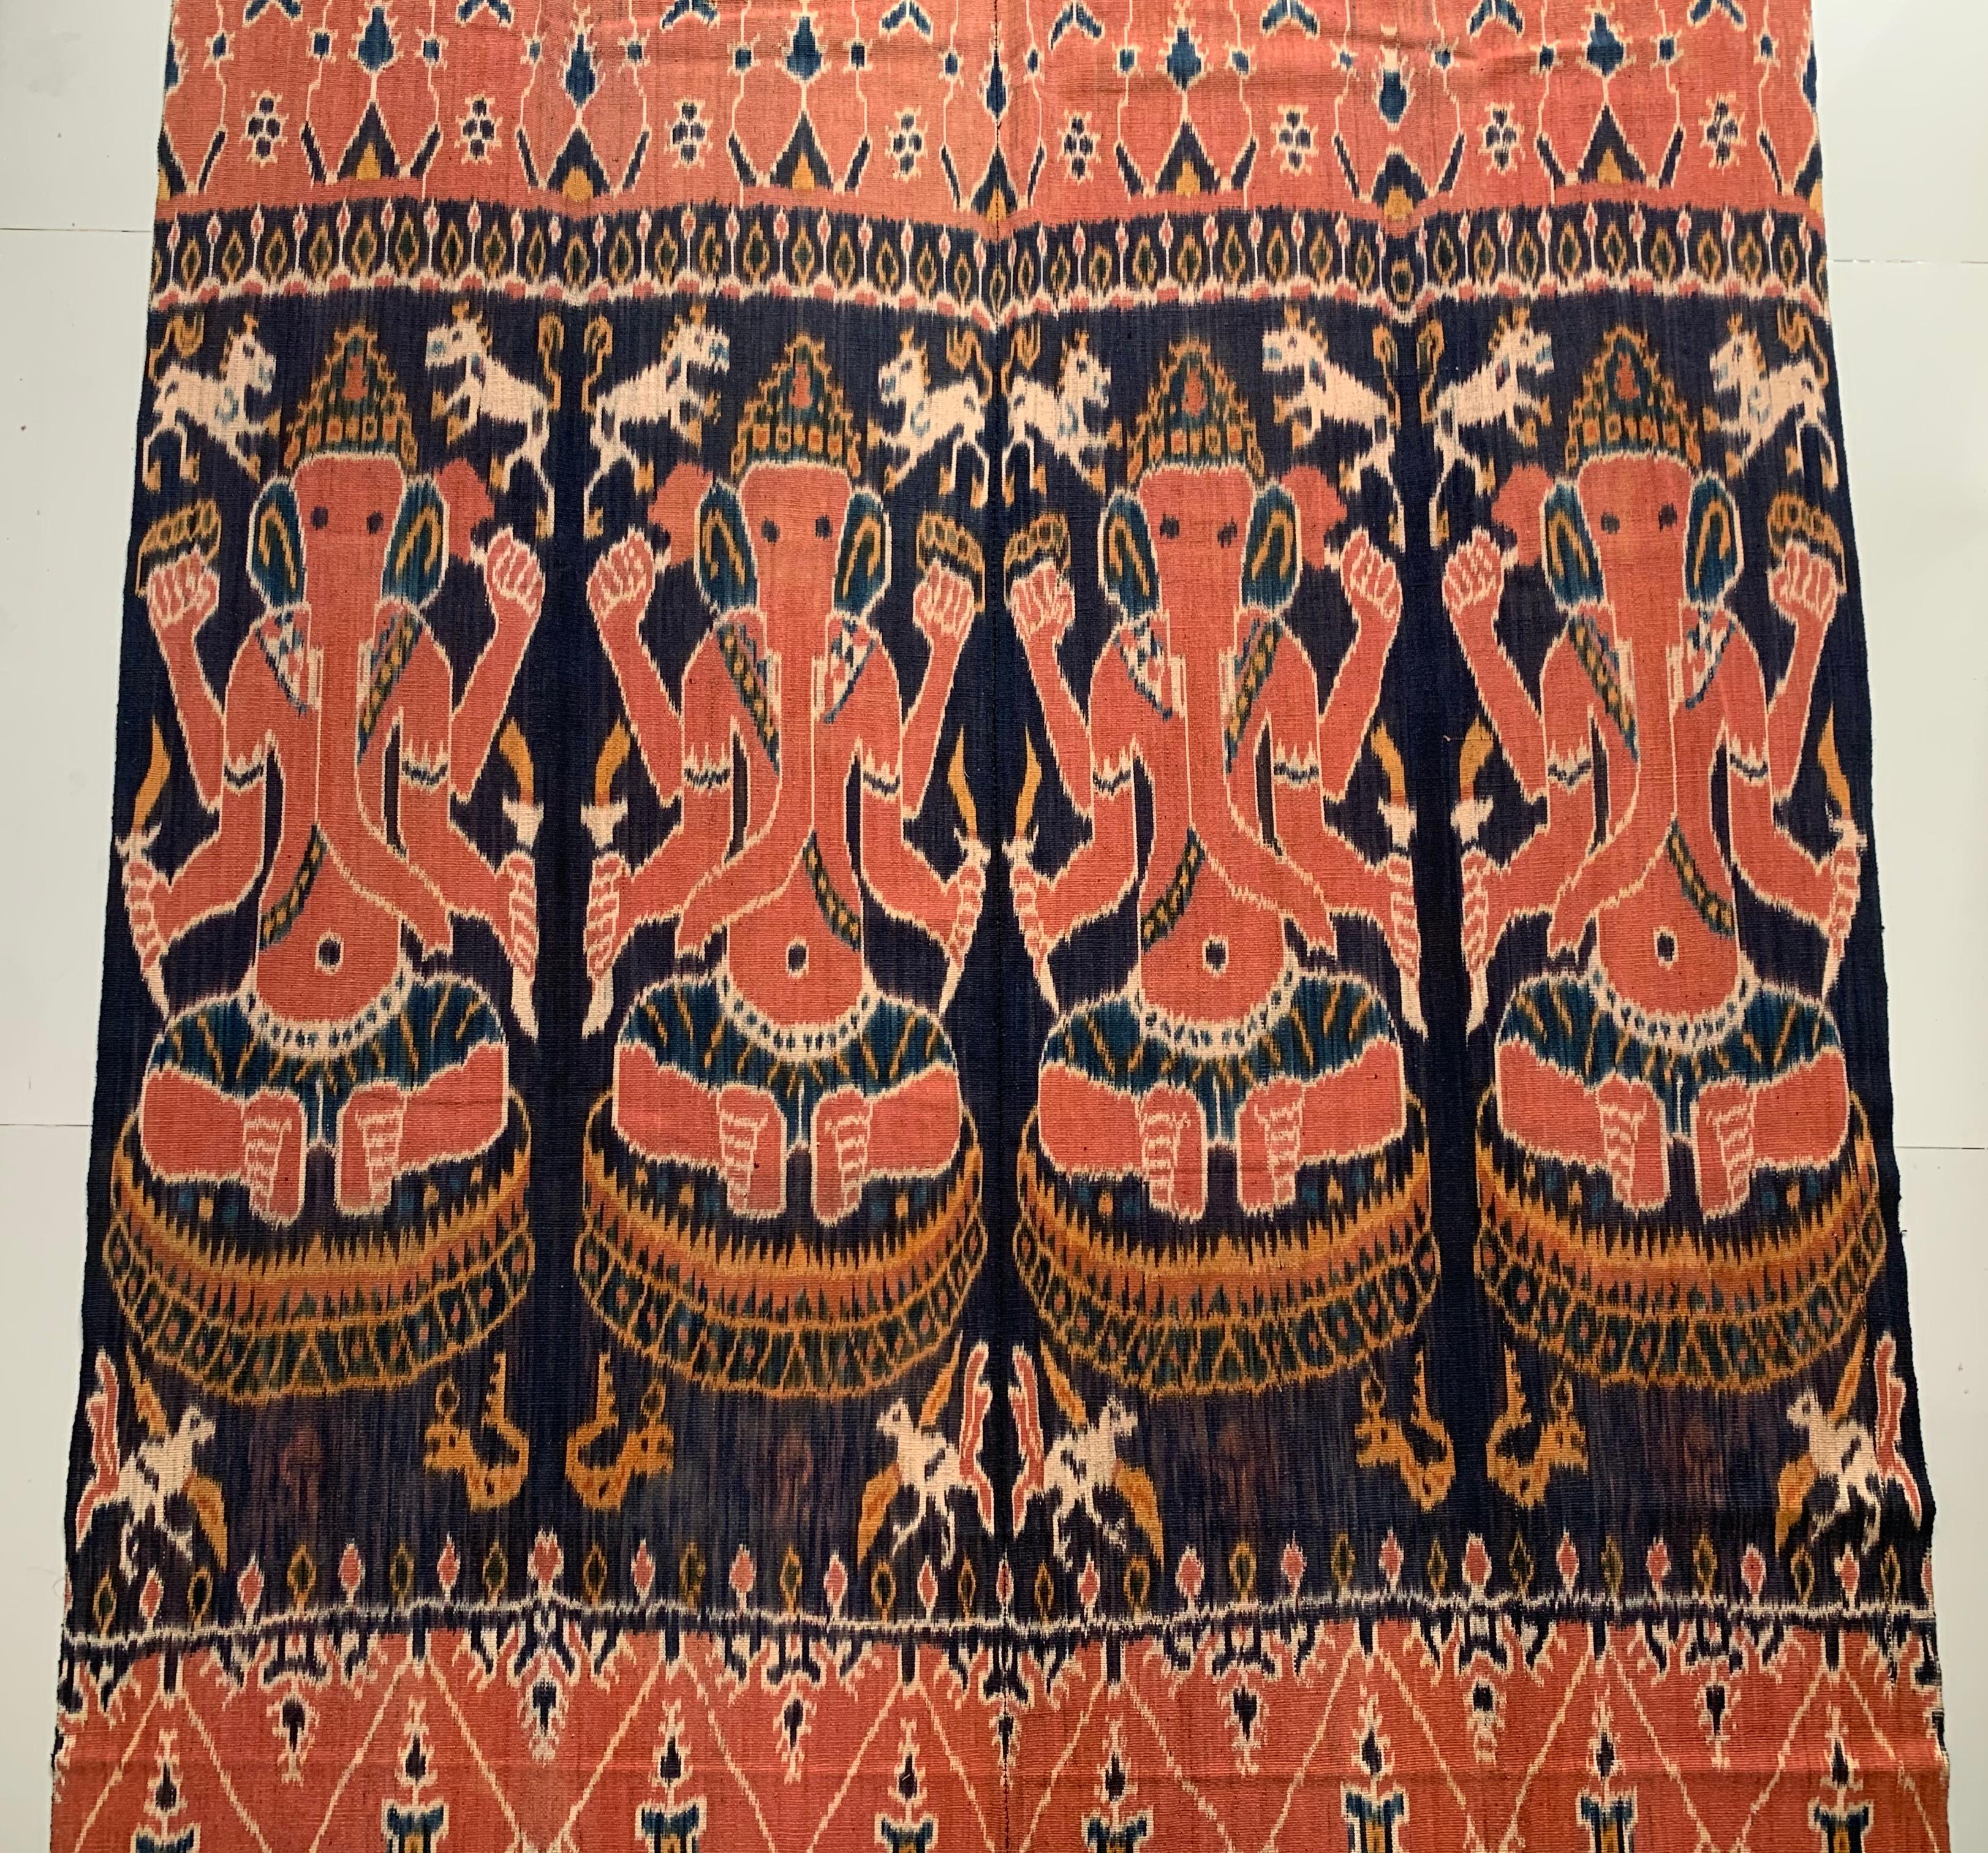 Ce textile Ikat est originaire de l'île de Sumba, en Indonésie. Il est tissé à la main à l'aide de fils teints naturellement, selon une méthode transmise de génération en génération. Il présente un éventail étonnant de motifs tribaux distincts.